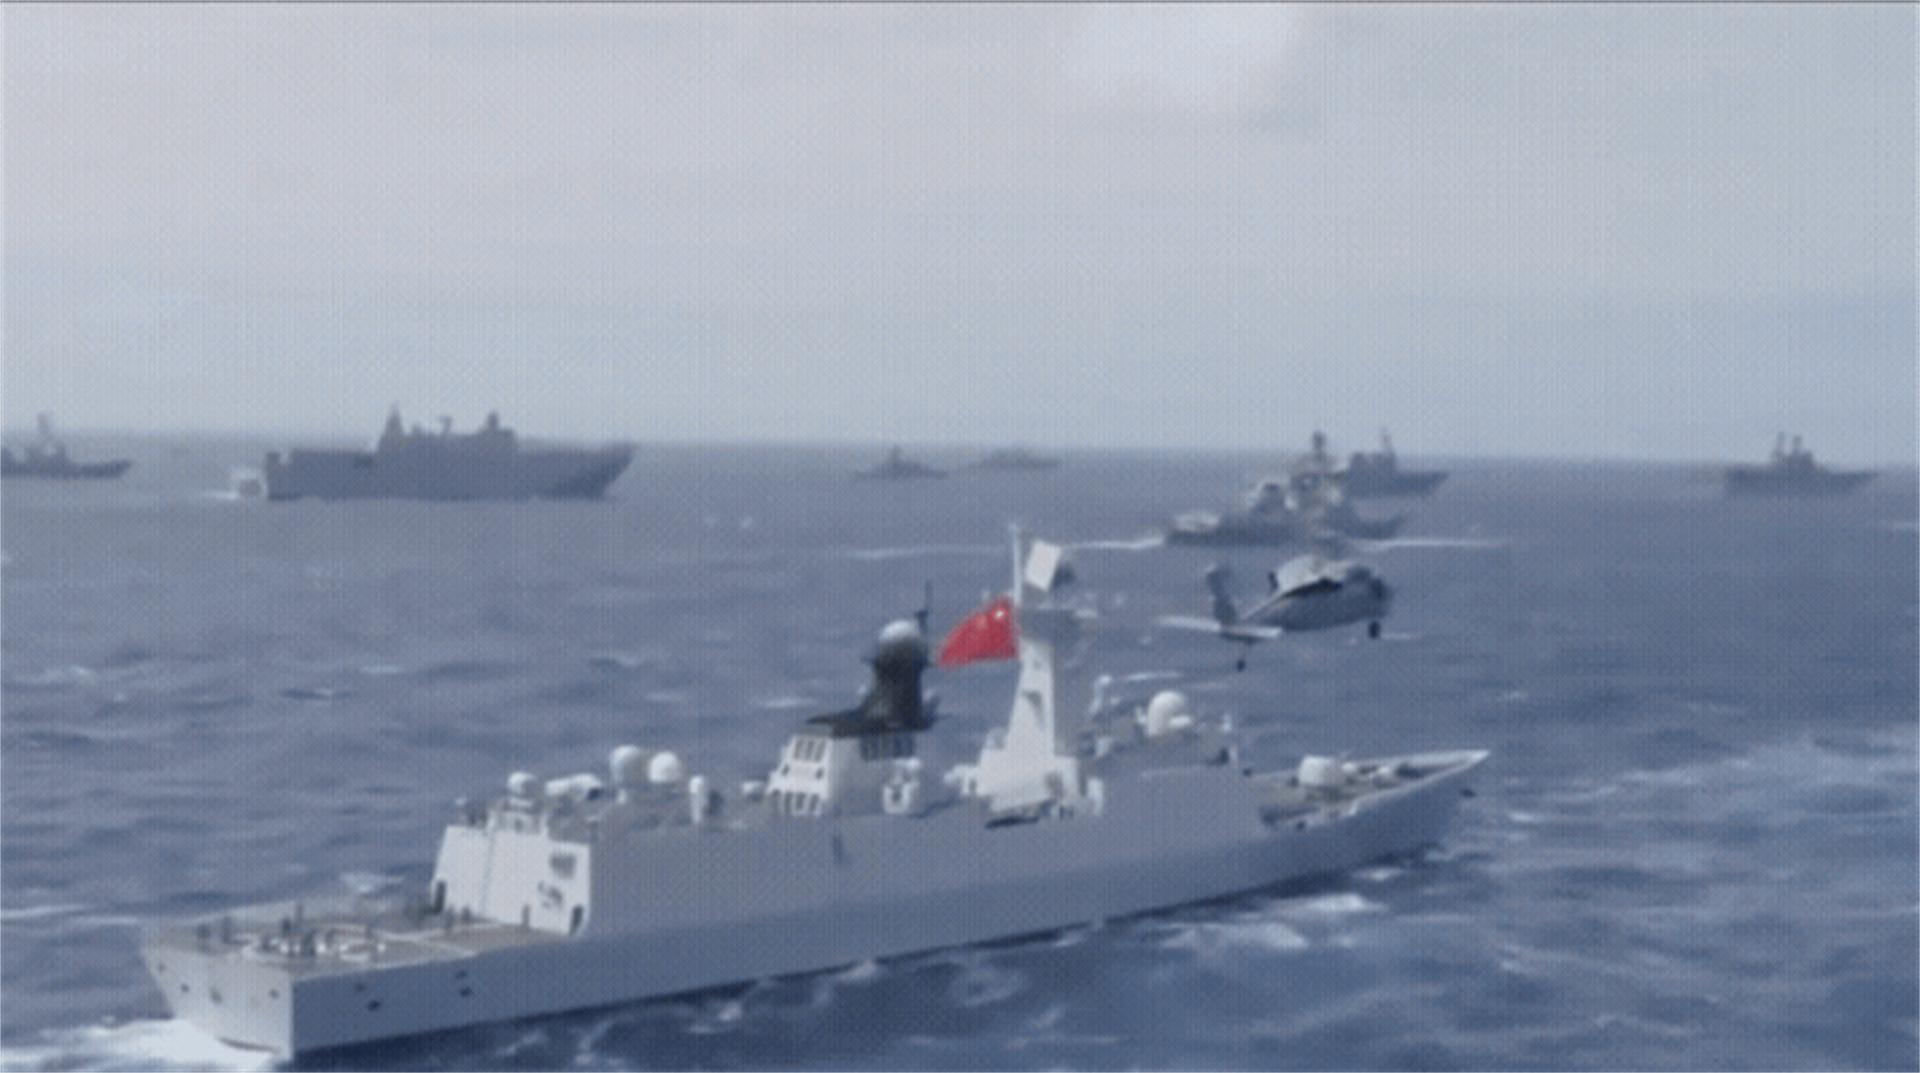 解放军台军船舰对峙是怎么回事,关于台湾货船撞击大陆军舰的新消息 多特软件资讯 